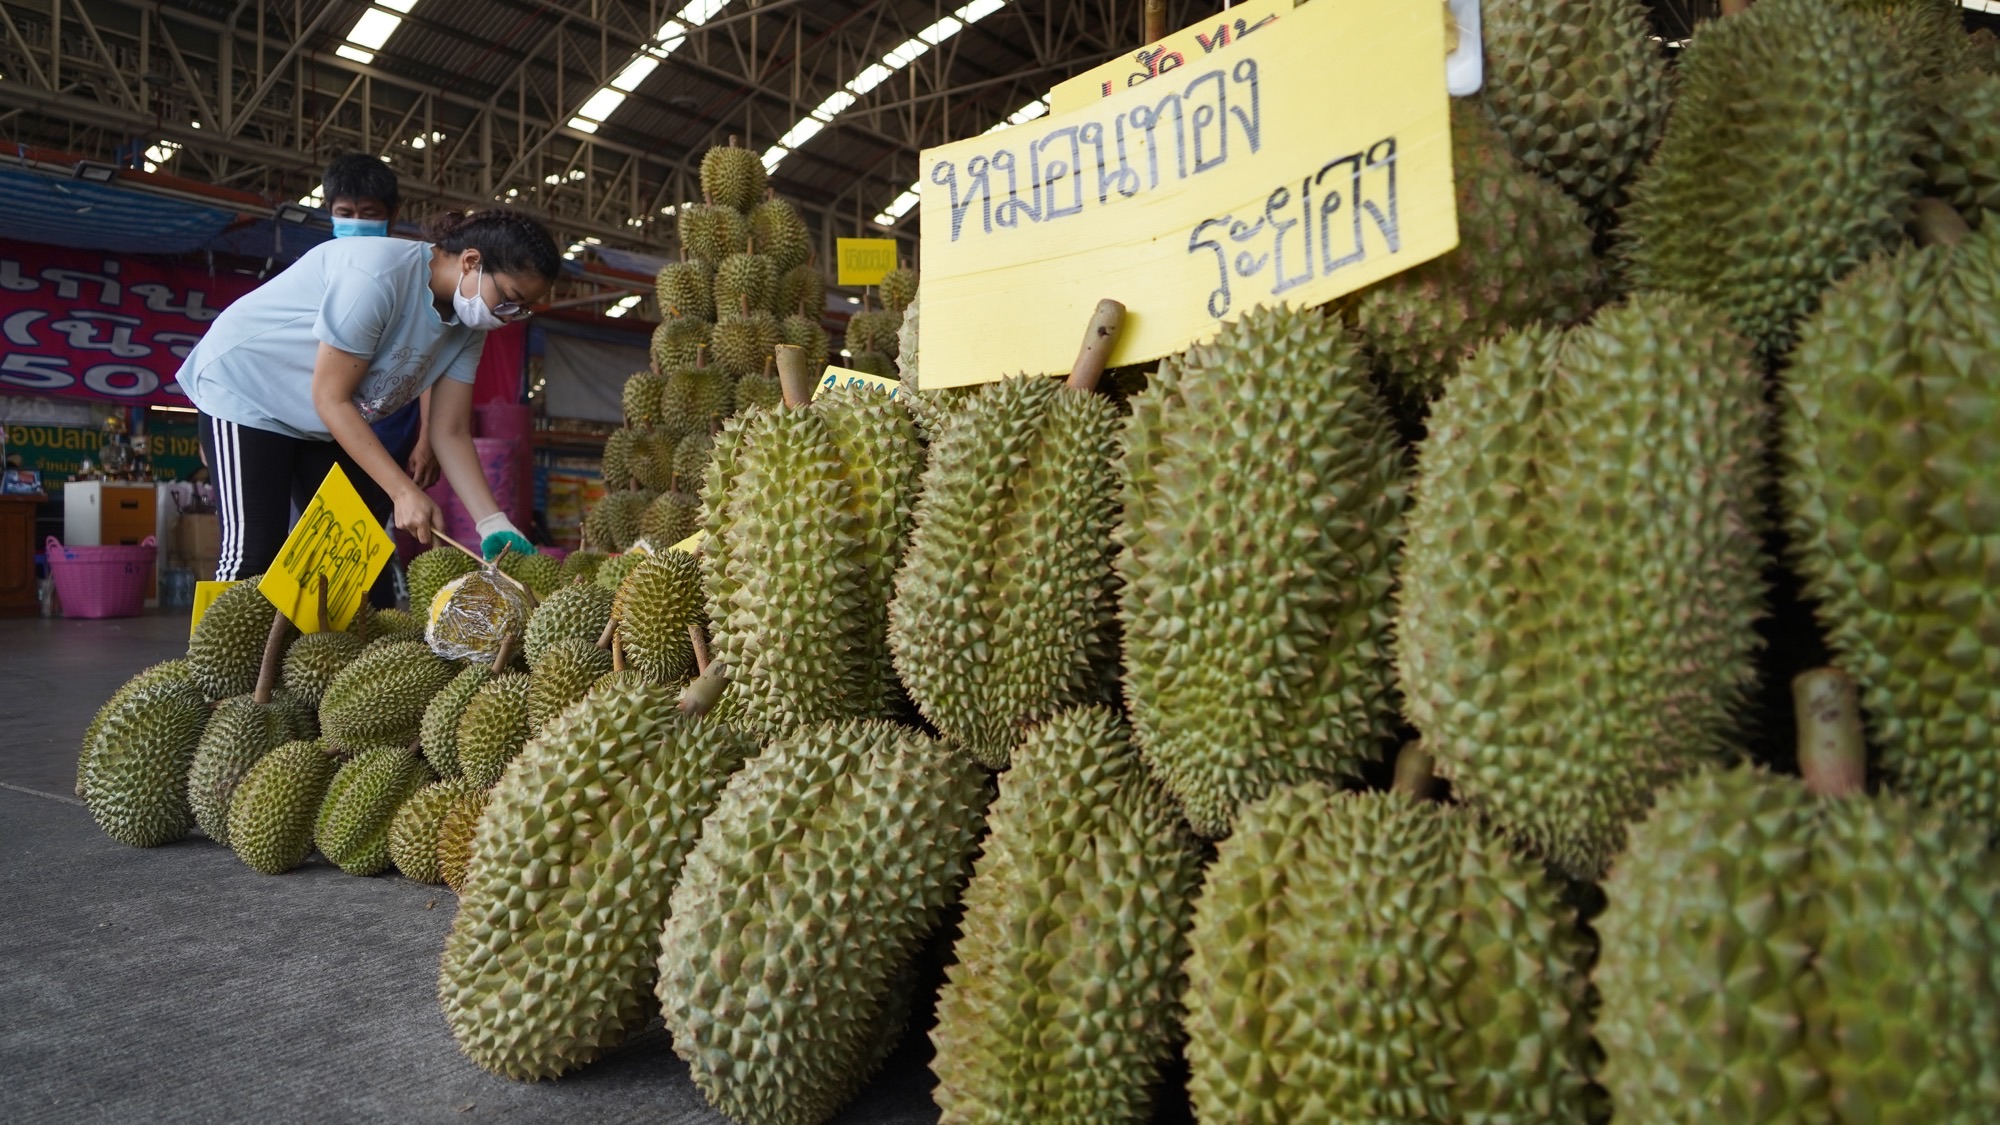 Việt Nam, Thái Lan đều gặp khó khi bán trái cây sang Trung Quốc, lý do là gì? - Ảnh 1.